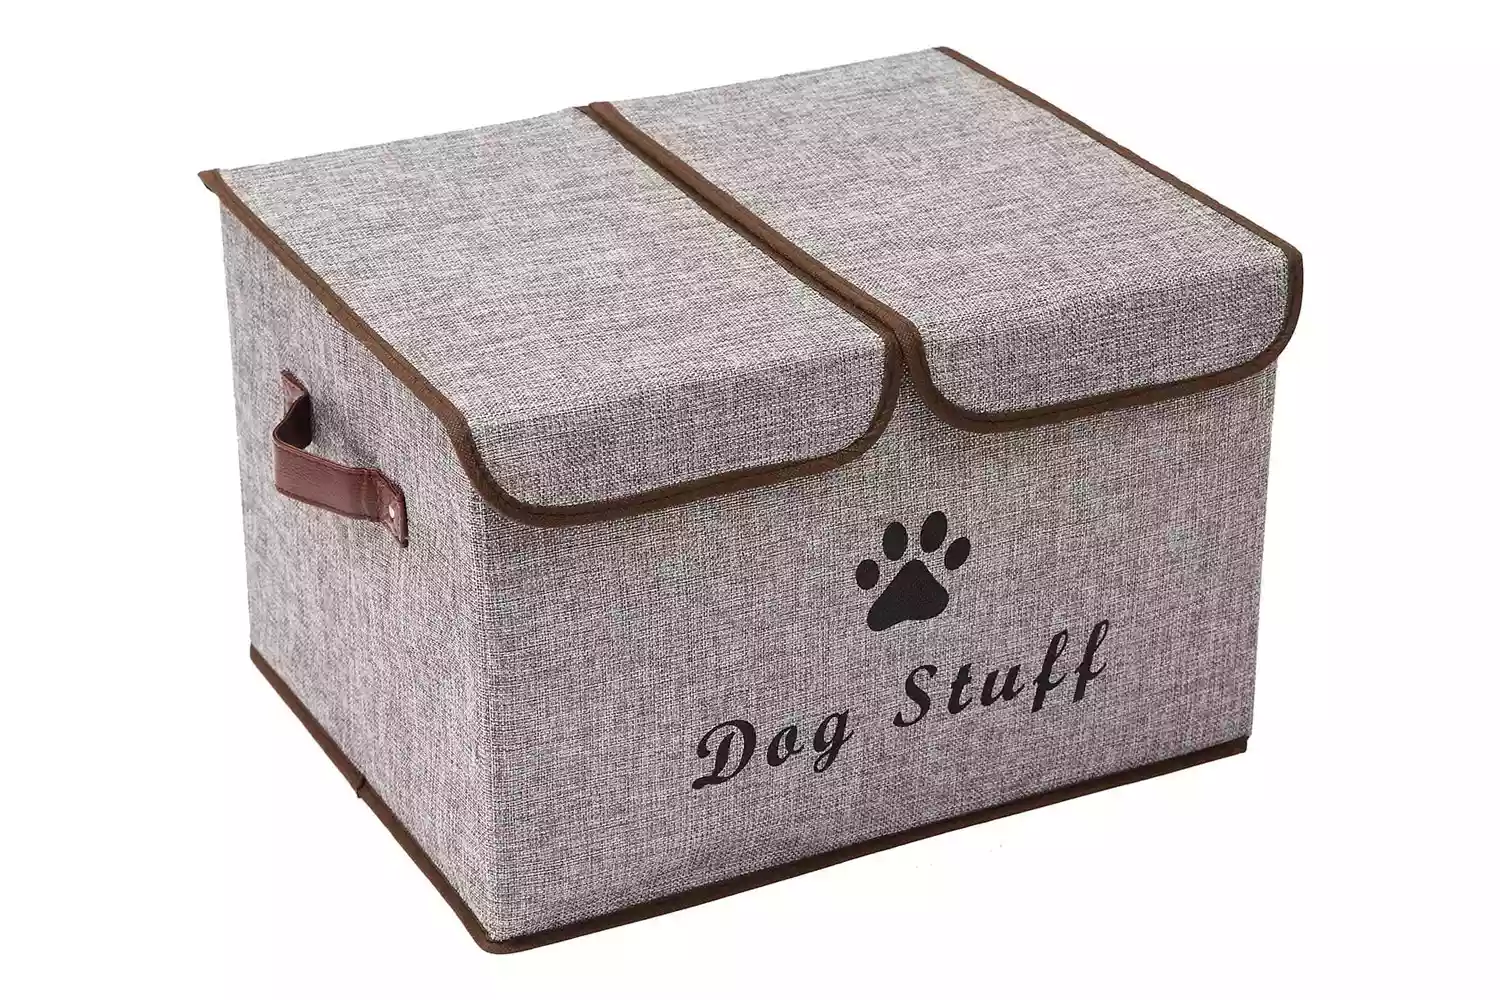 Morezi Large Dog Toy Storage Box with Lid